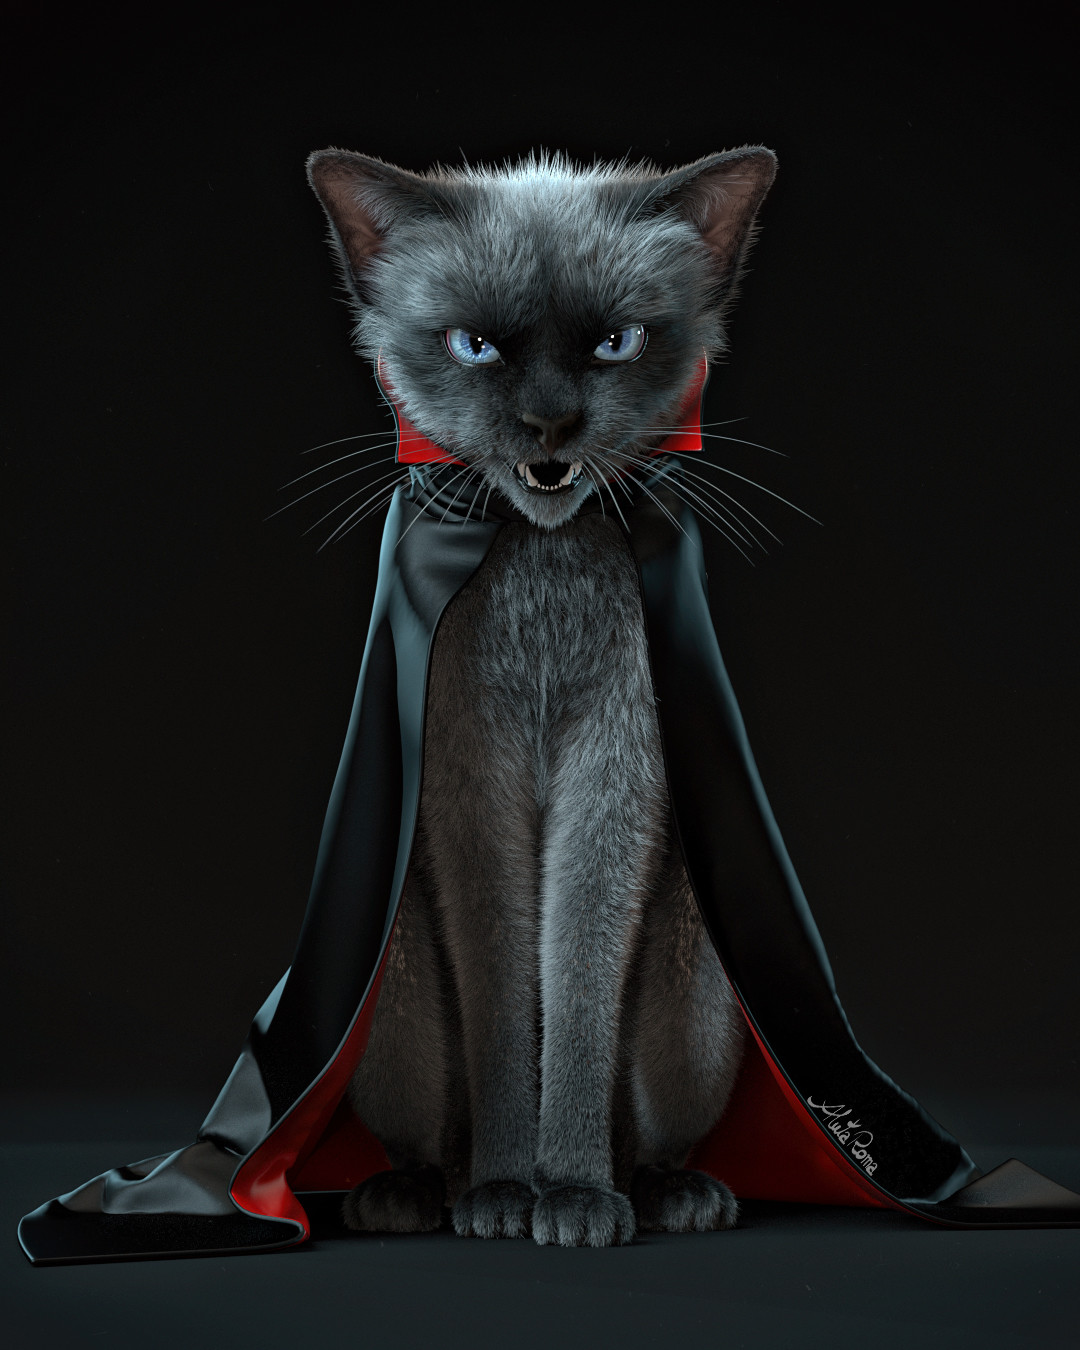 28+ Vampire Cat
 Images